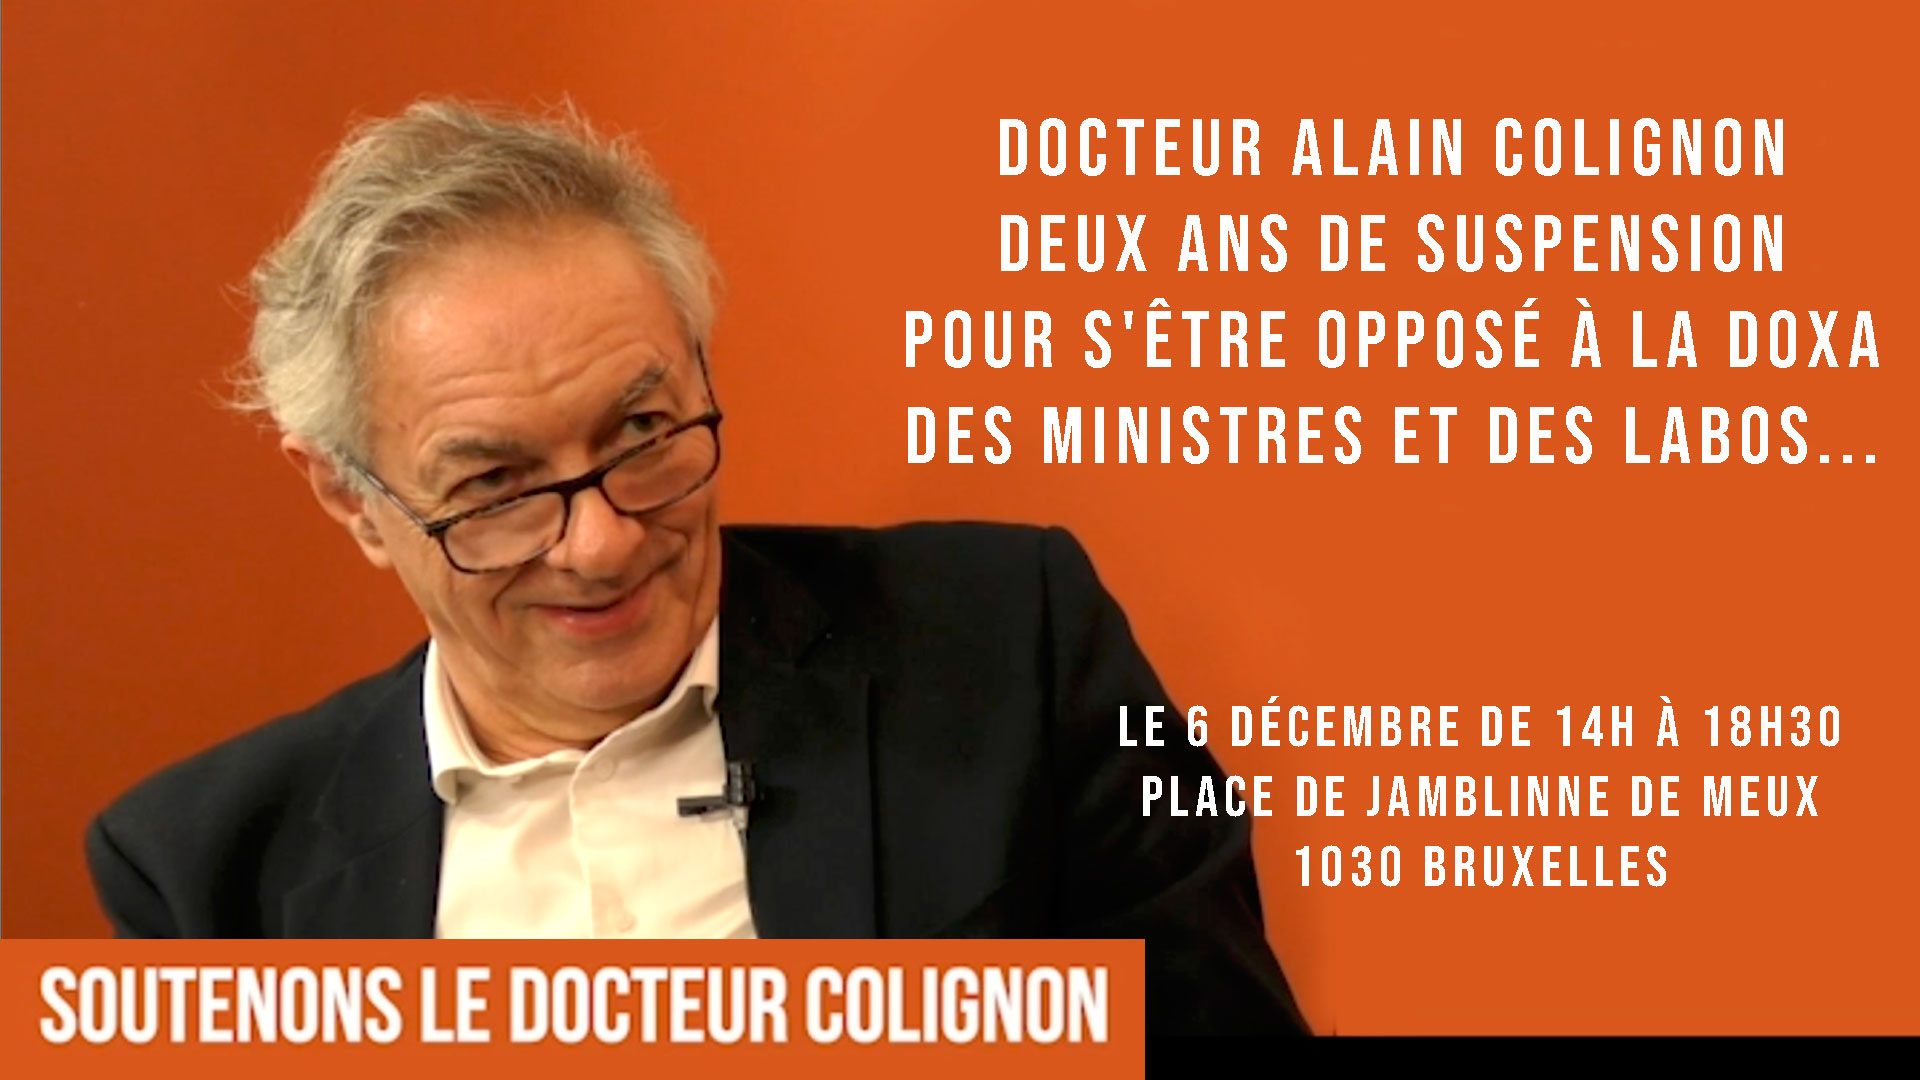 BAM! News - Deux ans de suspension pour un médecin belge !